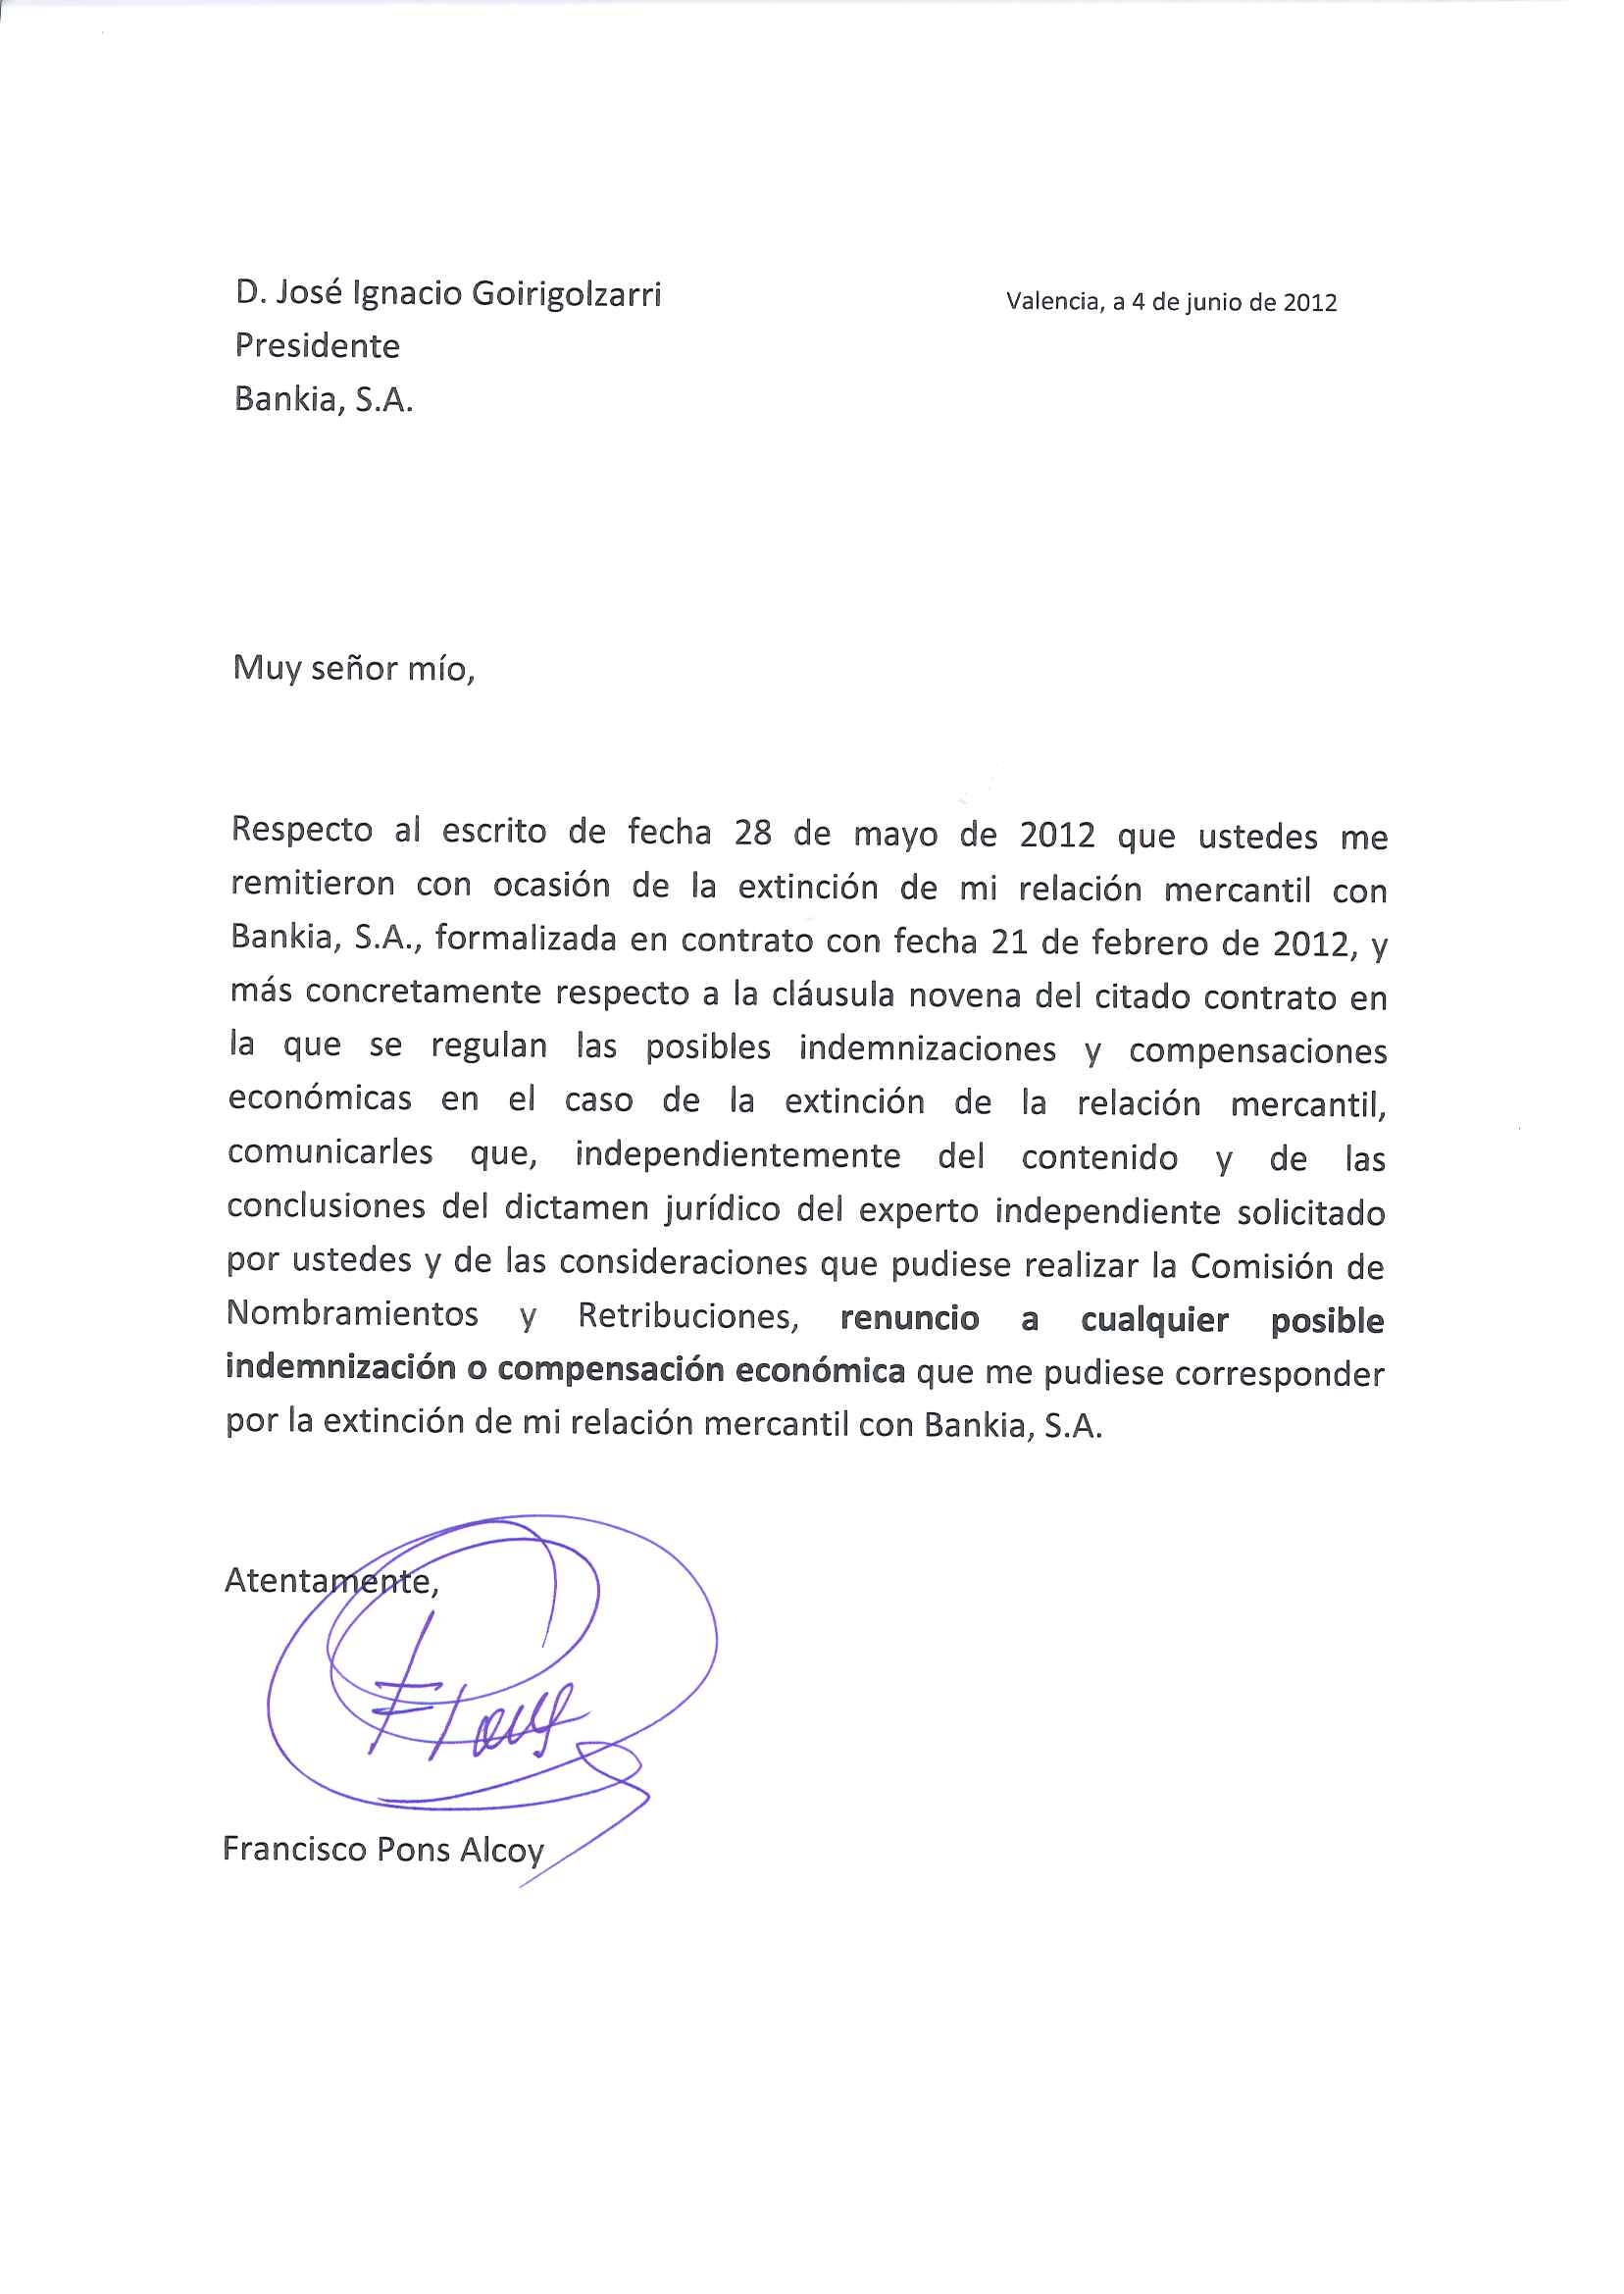 Francisco Pons renuncia a cualquier indemnización tras su 